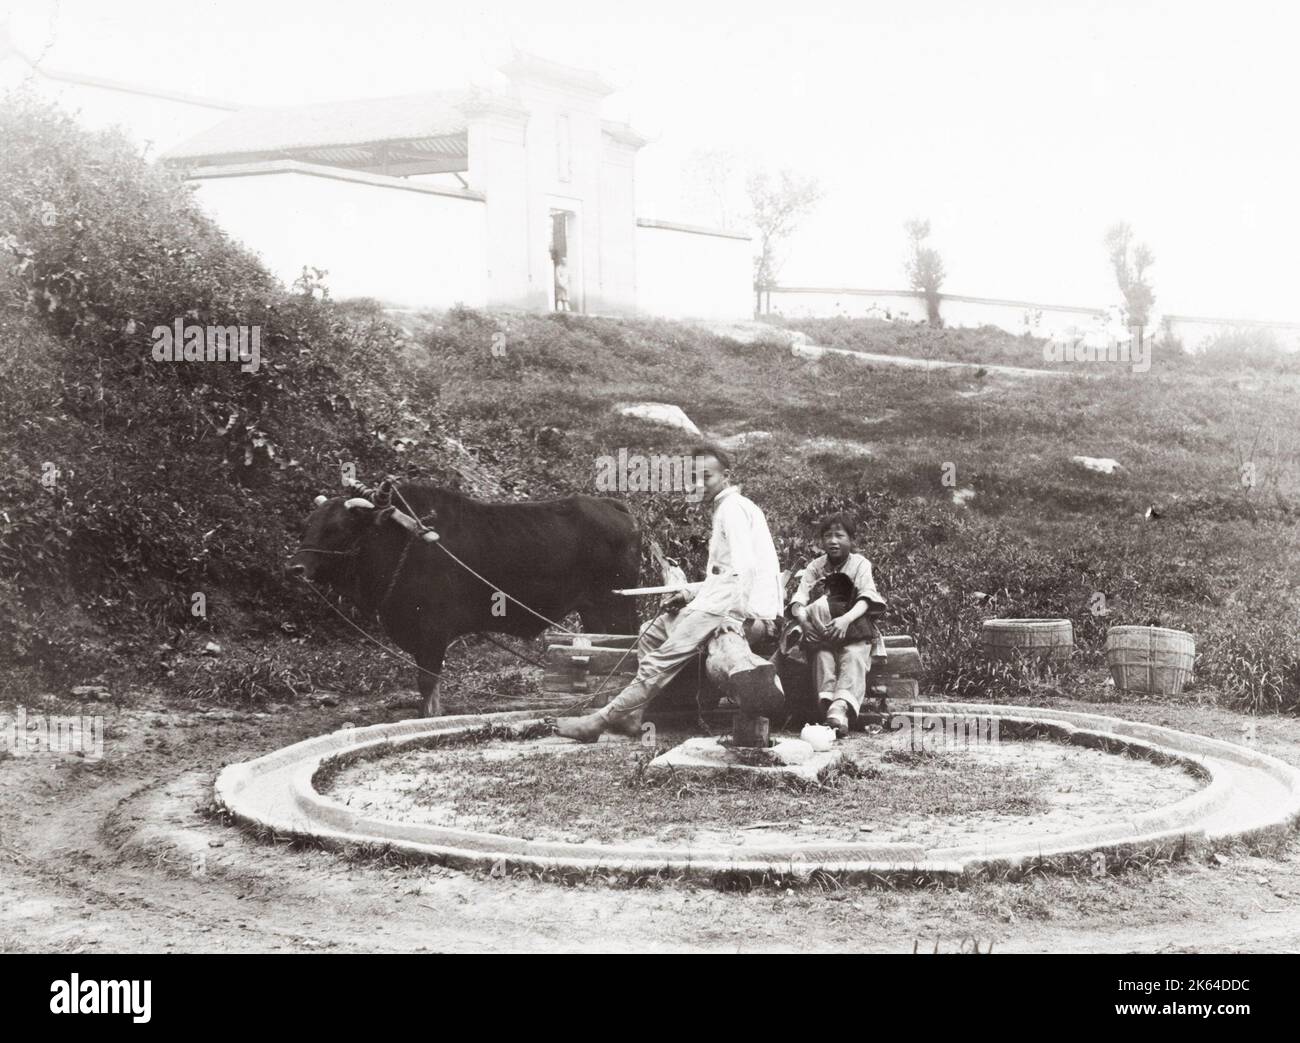 Inizio 20 ° secolo fotografia: Paese vita, bue guidato mola macinazione grano, Cina. Foto Stock